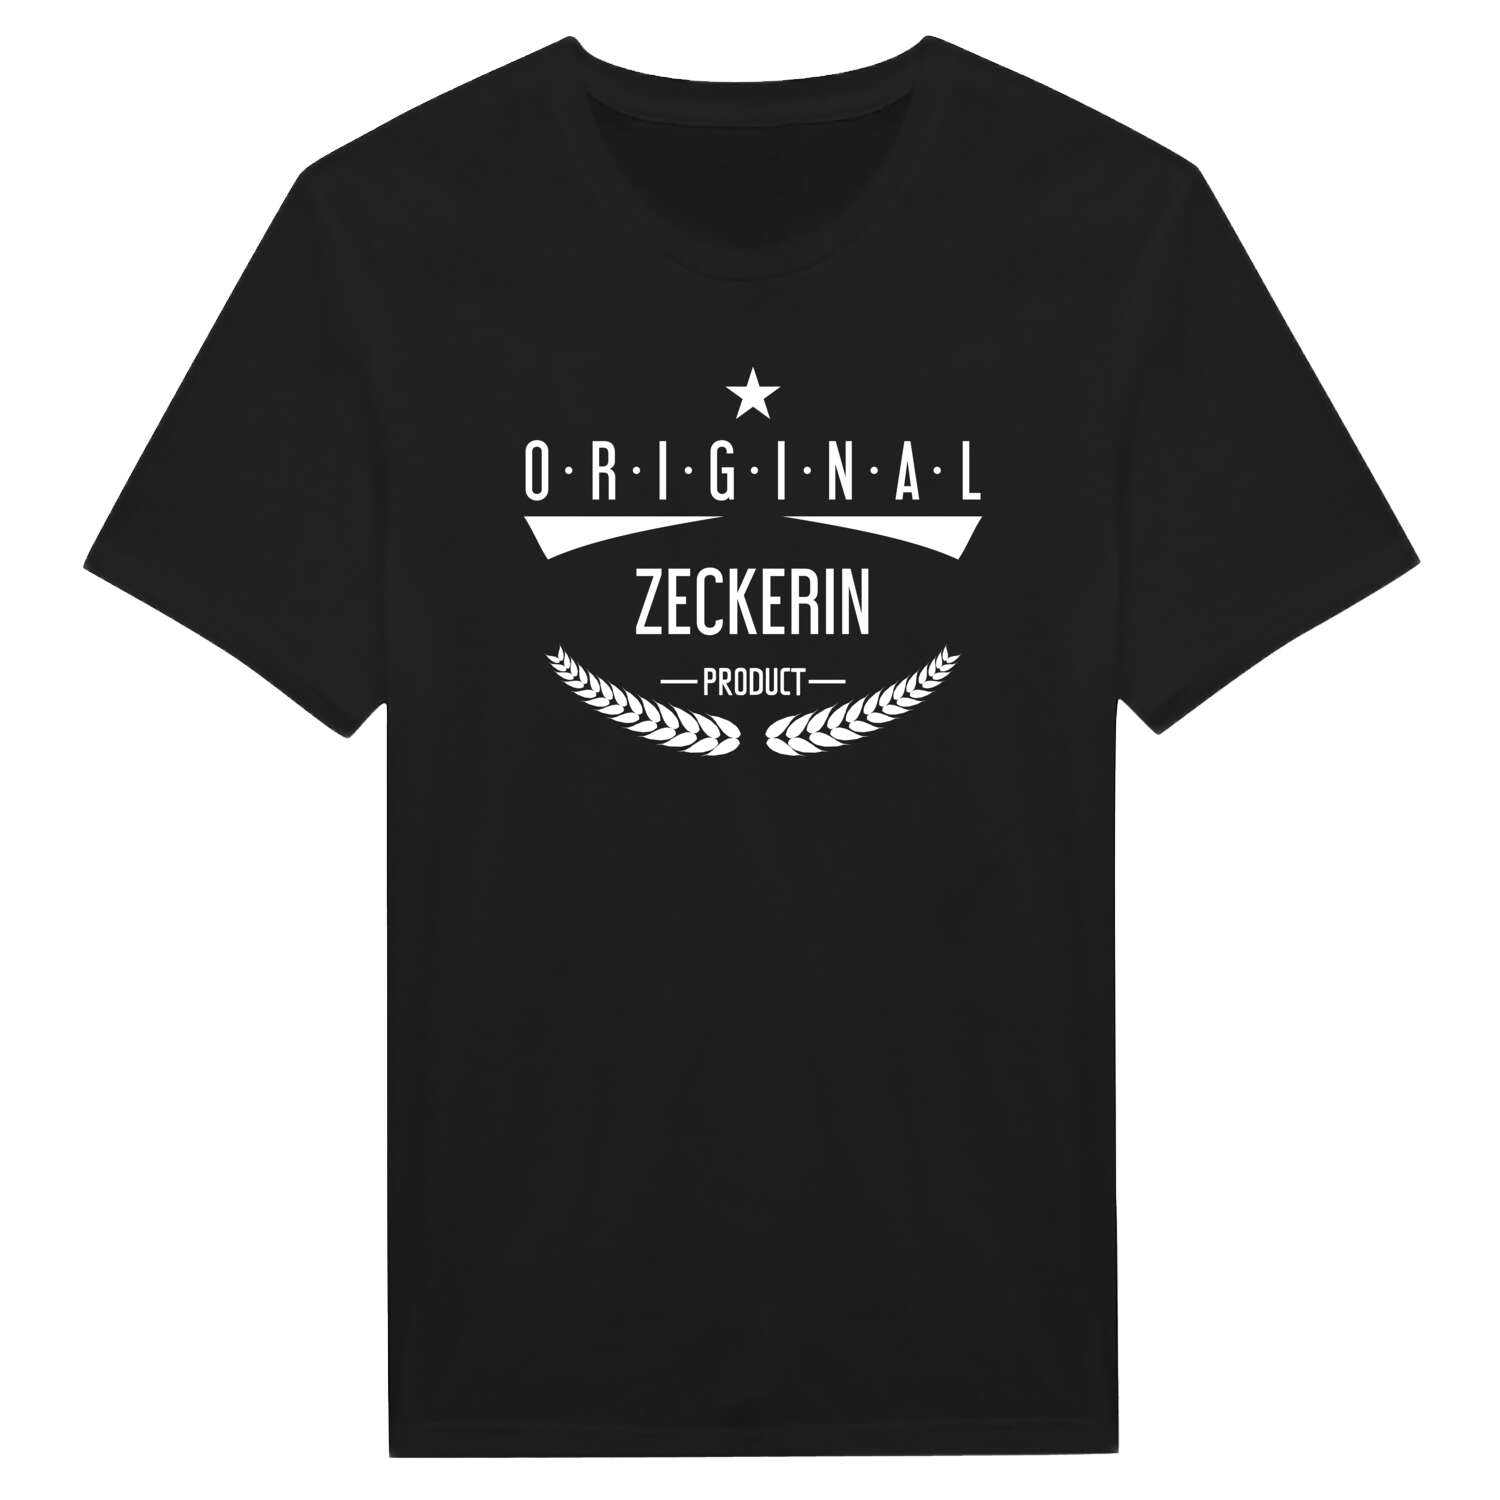 Zeckerin T-Shirt »Original Product«